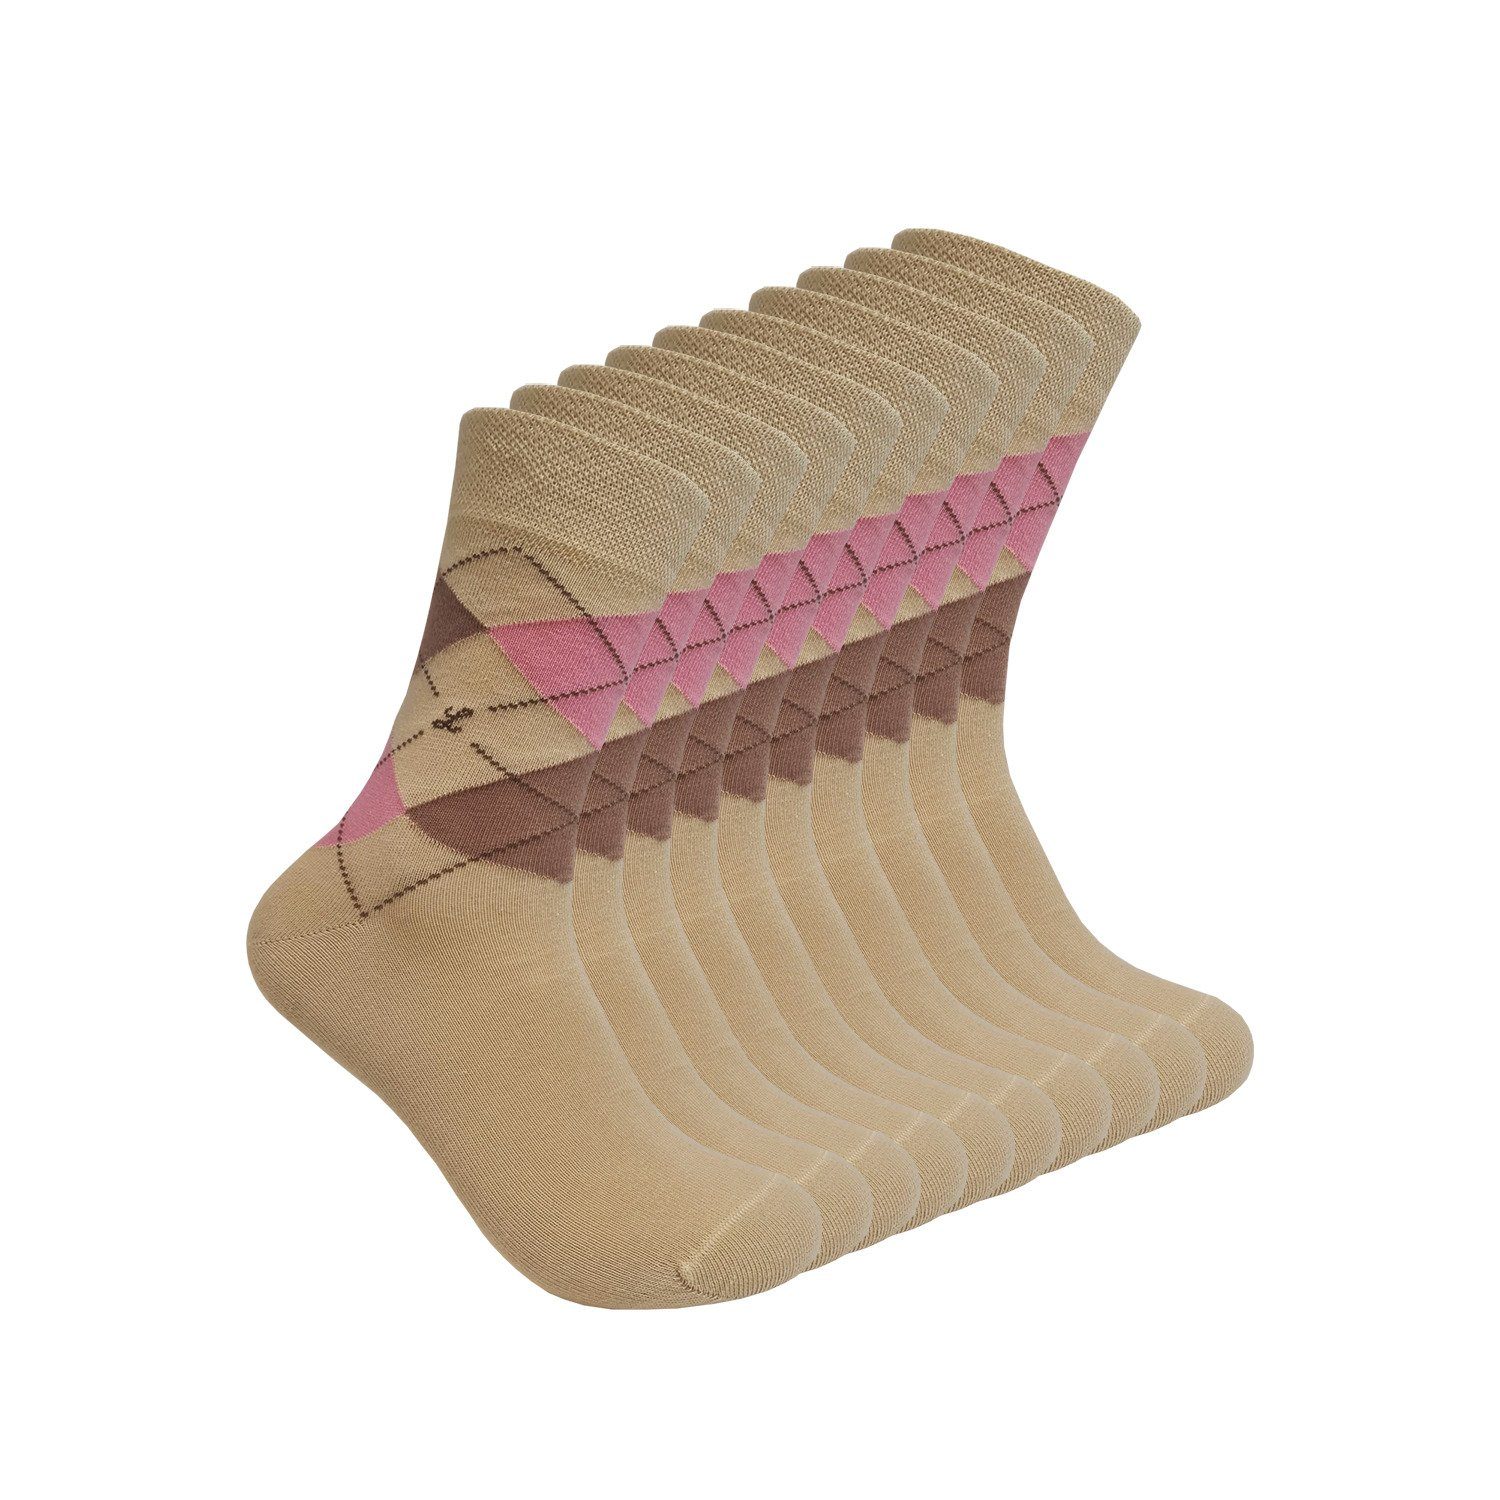 Max Lindner Businesssocken aus hochwertiger Baumwolle für Damen und Herren (unifarbend und gemustert, 10-Paar) atmungsaktiv und hautfreundlich hellbraun-rosa-Mix | Socken